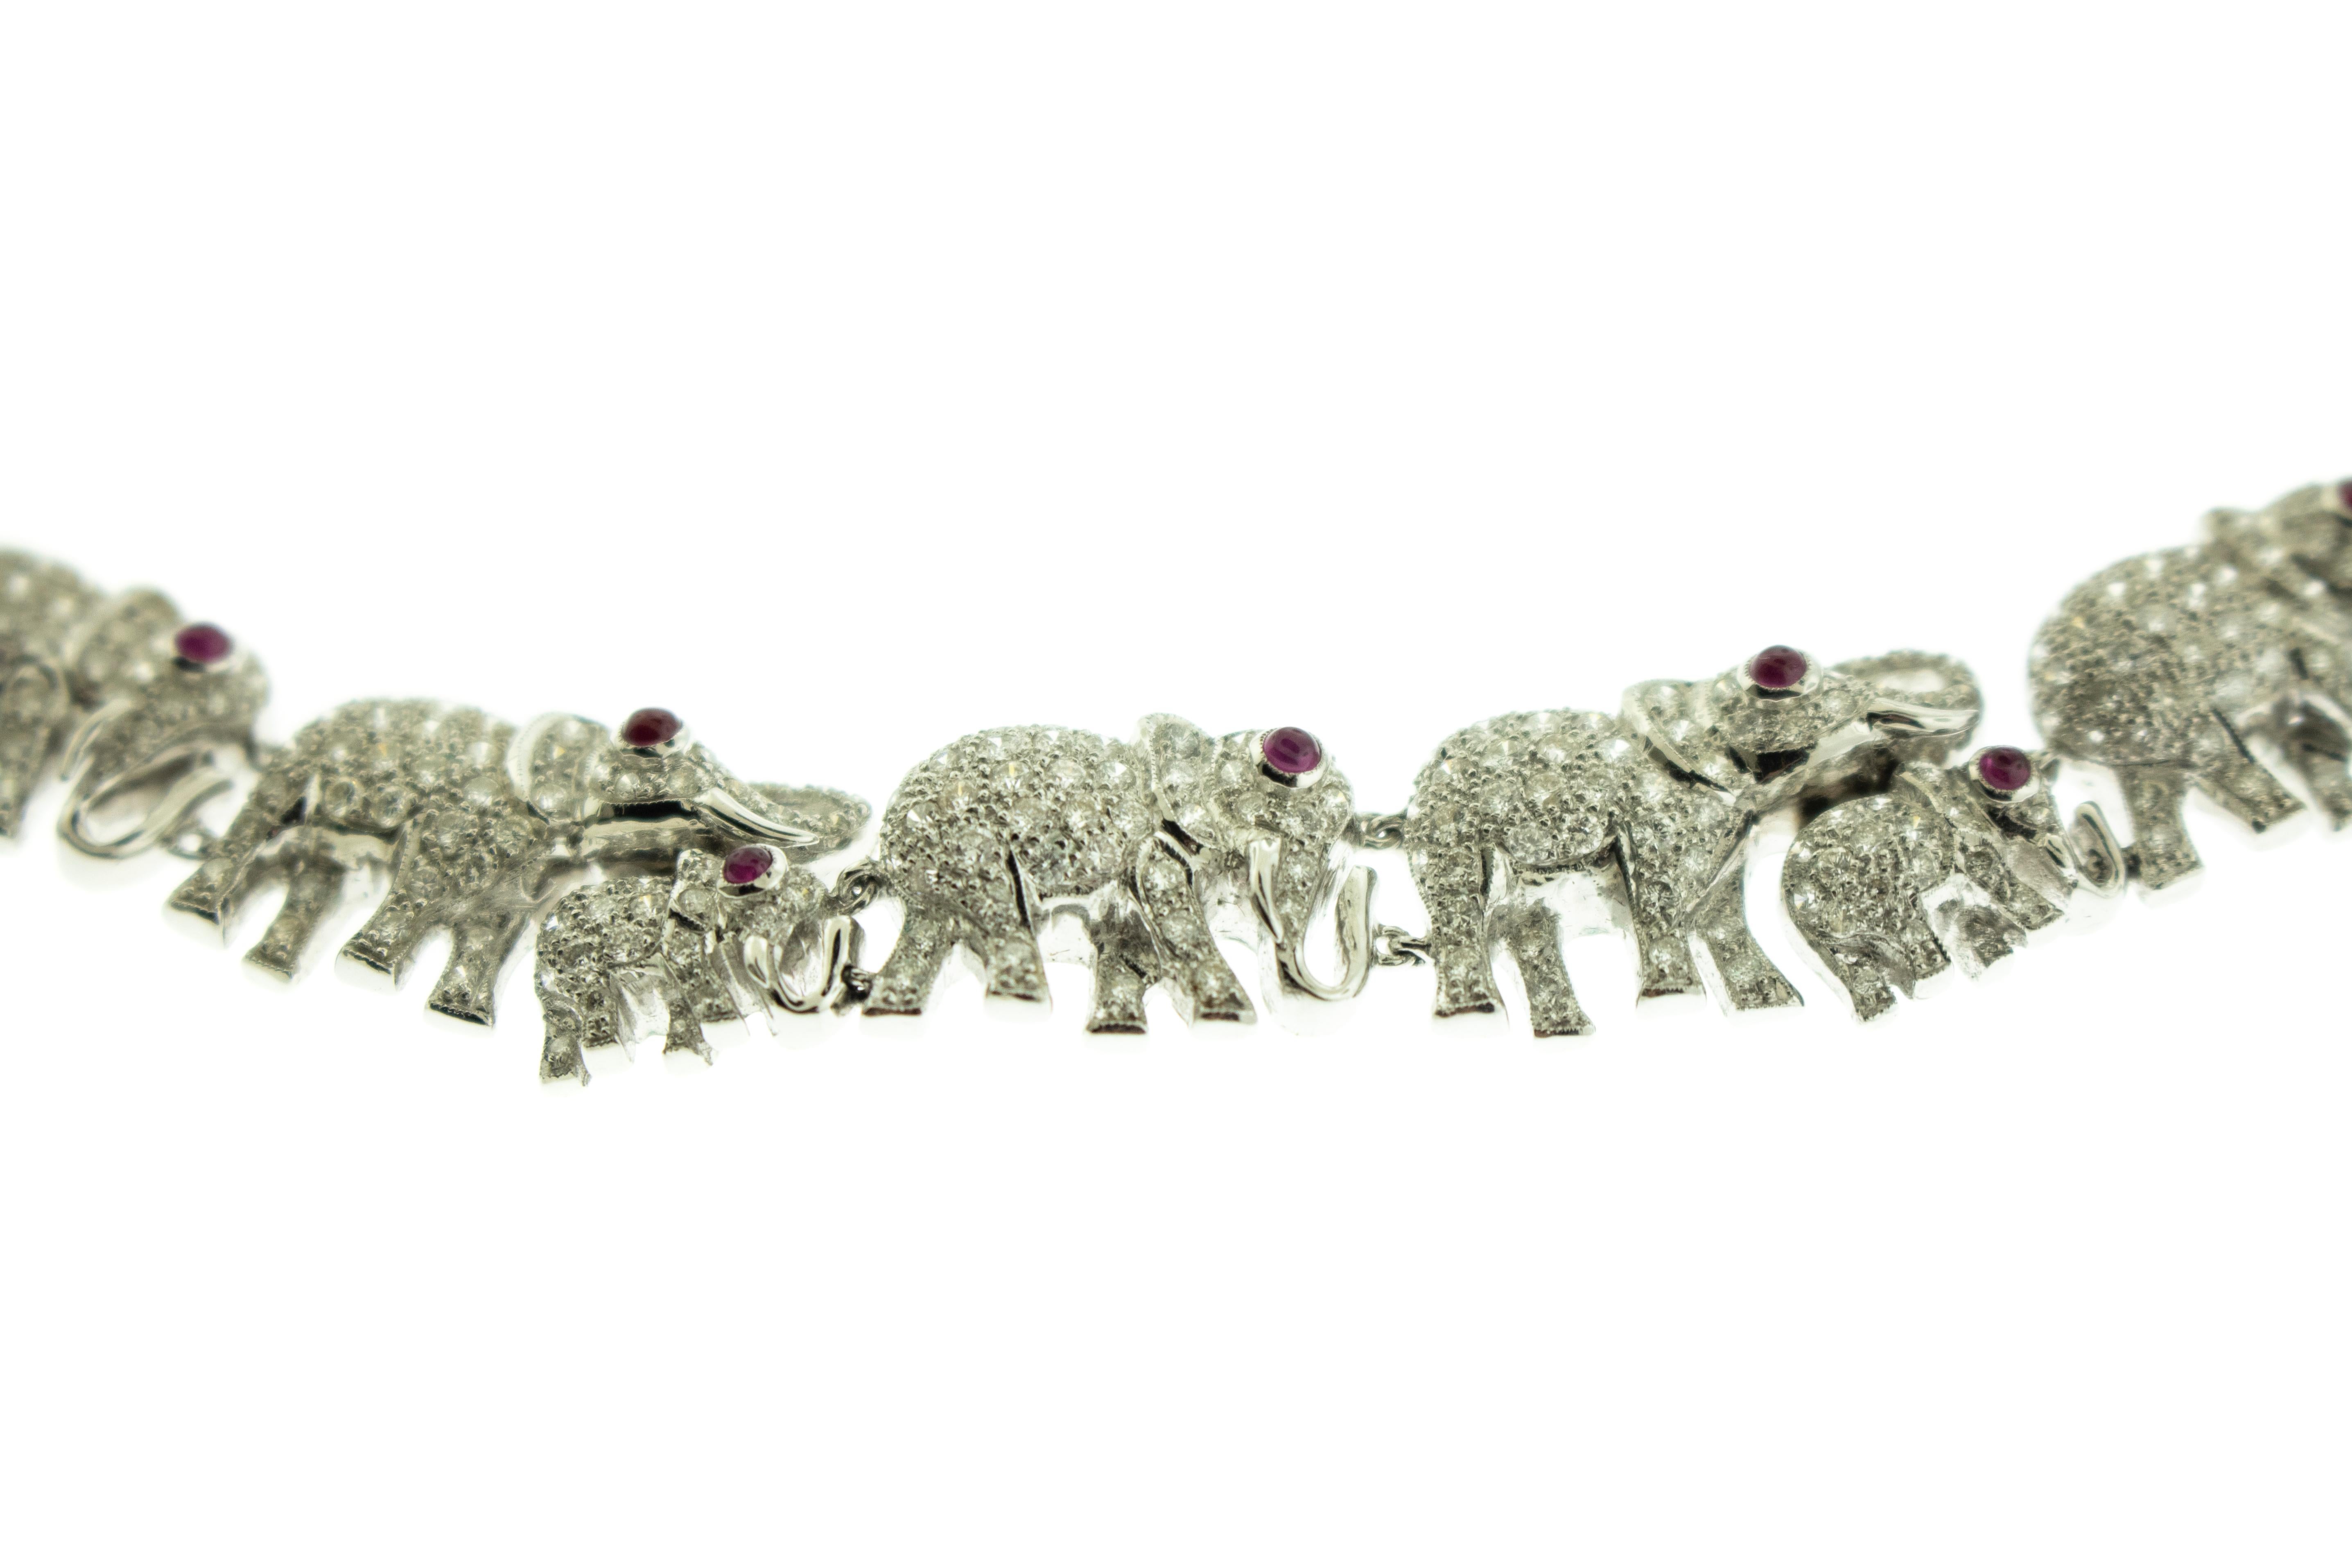 Diamant Rubin Elefant 18k Weißgold Armband Halskette Set. Das Set ist mit Baby- und erwachsenen Elefanten mit Rubinaugen und mit Diamanten besetzten Körpern verziert. Das Gesamtgewicht des Sets beträgt 110,60 Gramm. 
Länge des Armbands 7 Zoll. Länge